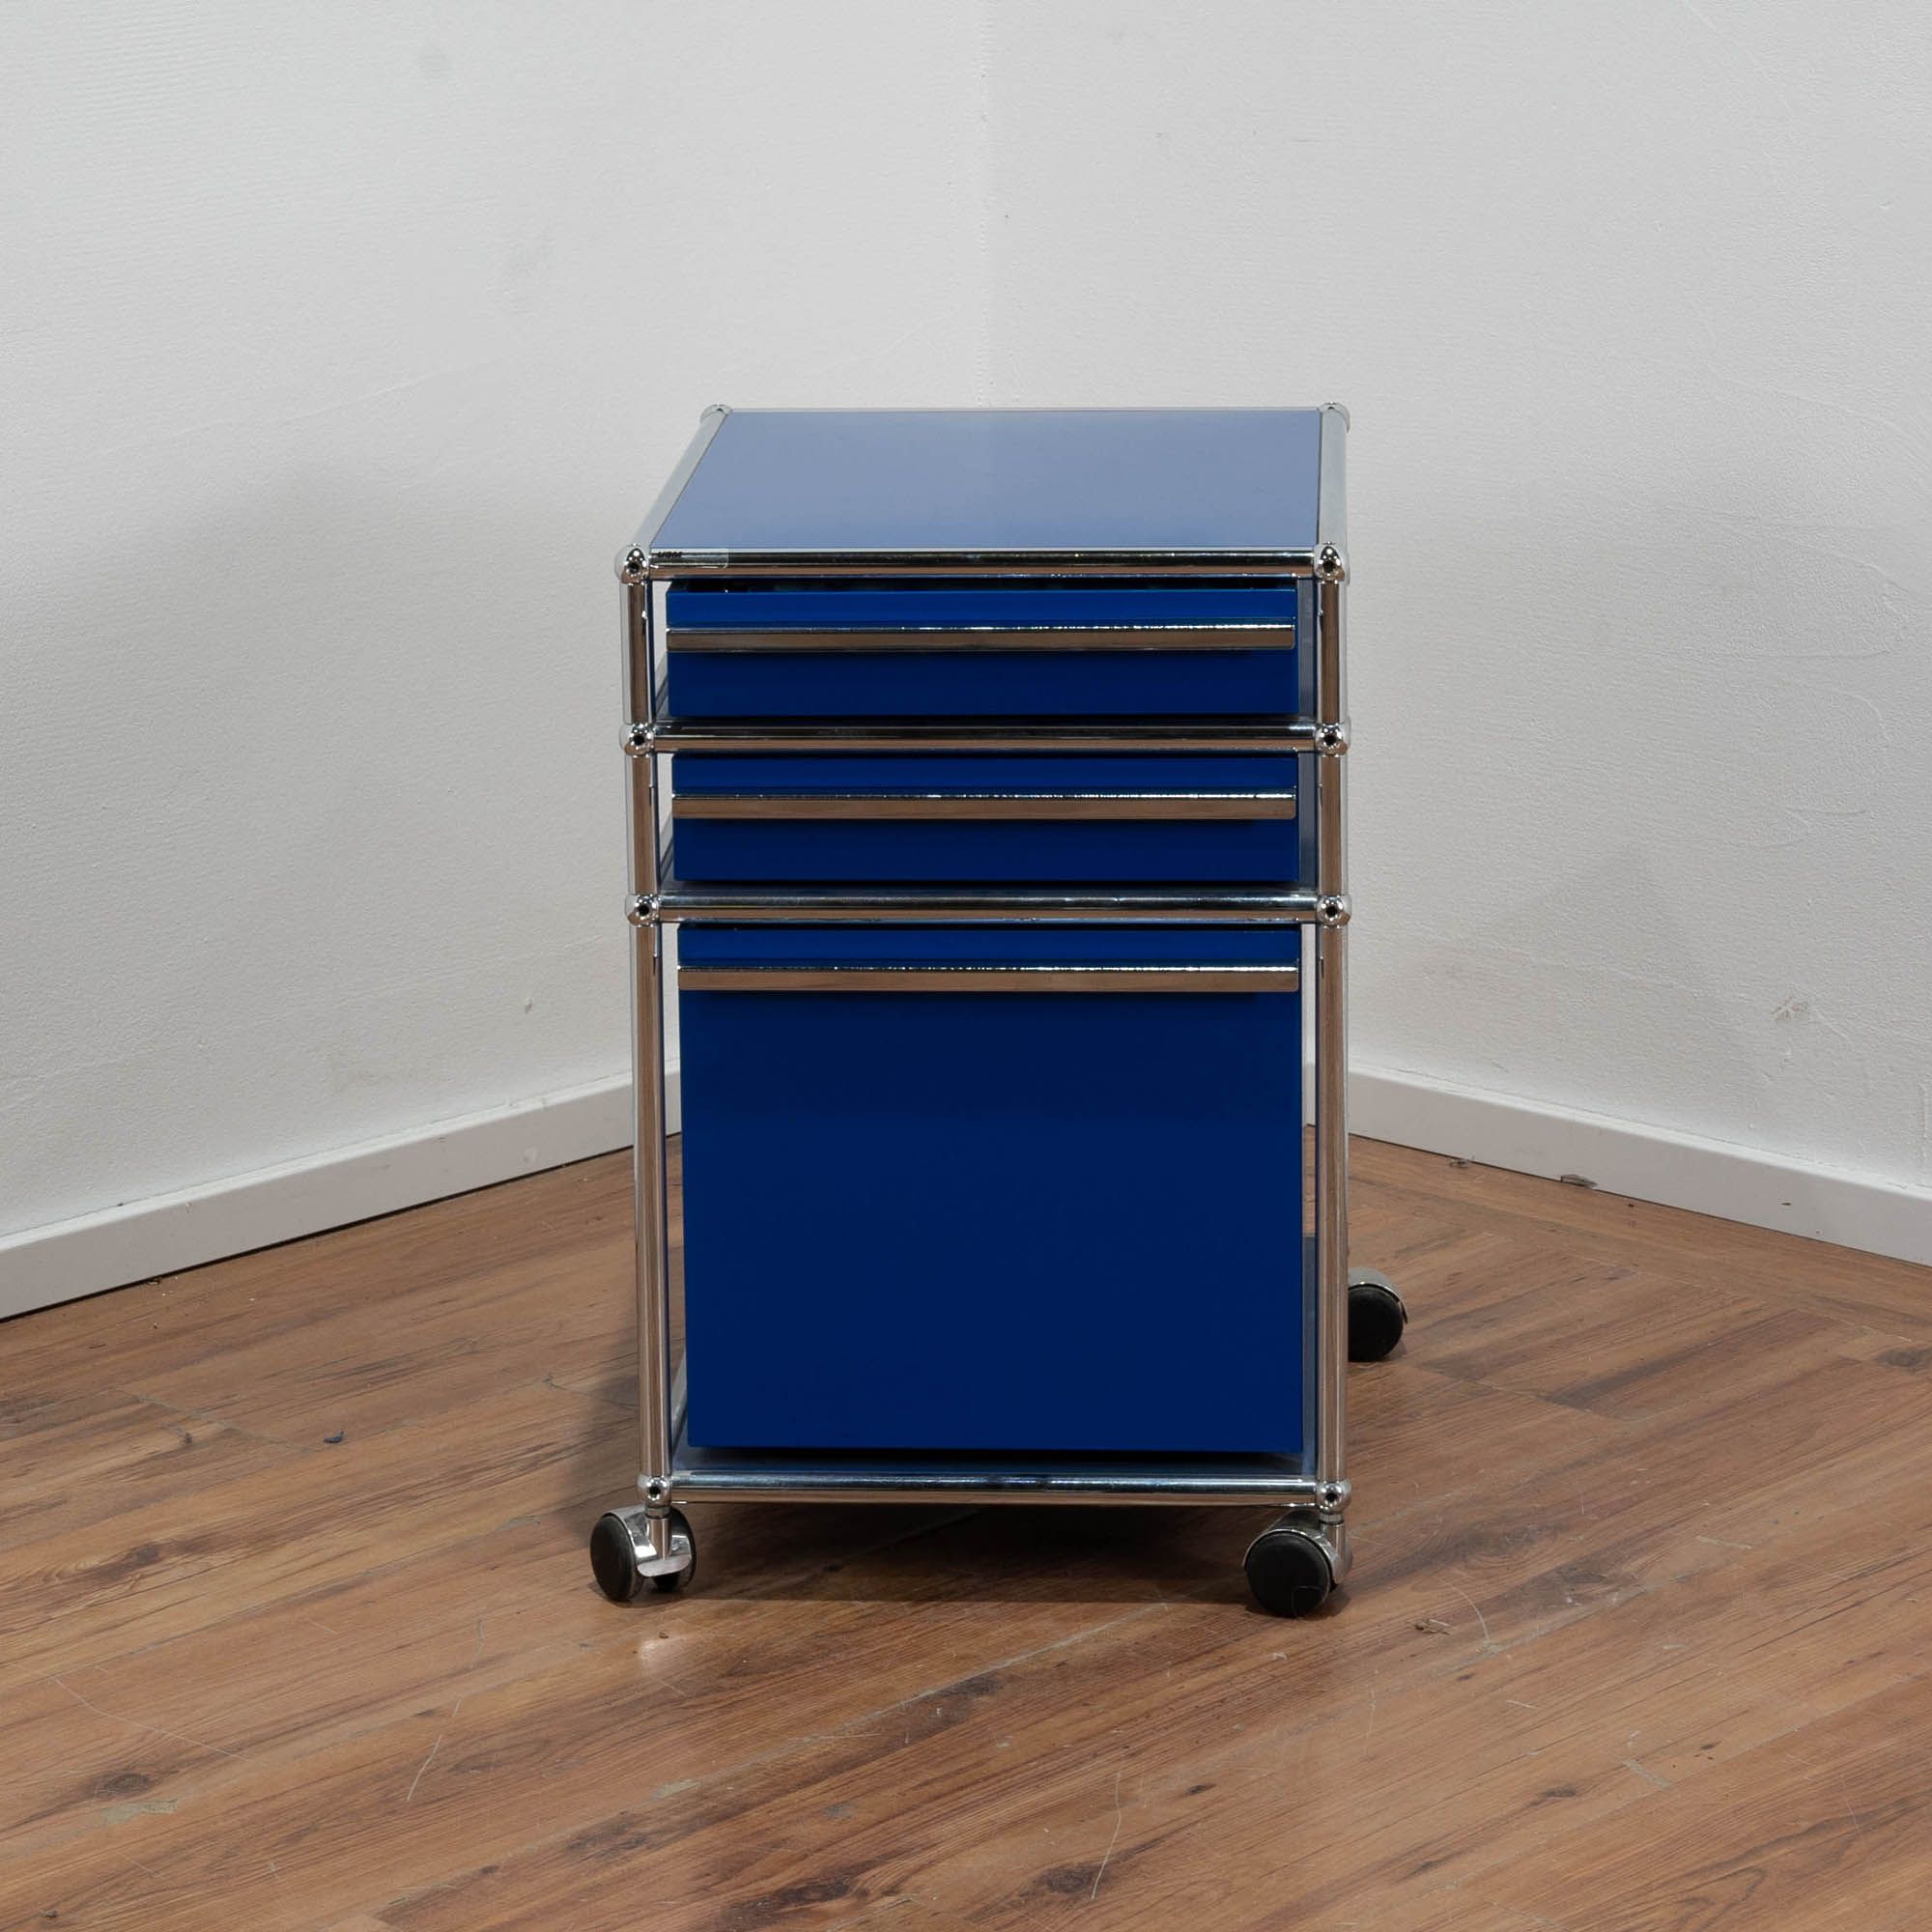 USM Haller Rollcontainer blau - 3 Schubladen - Maße: 60 x 40 x 50 cm (H/B/T) 